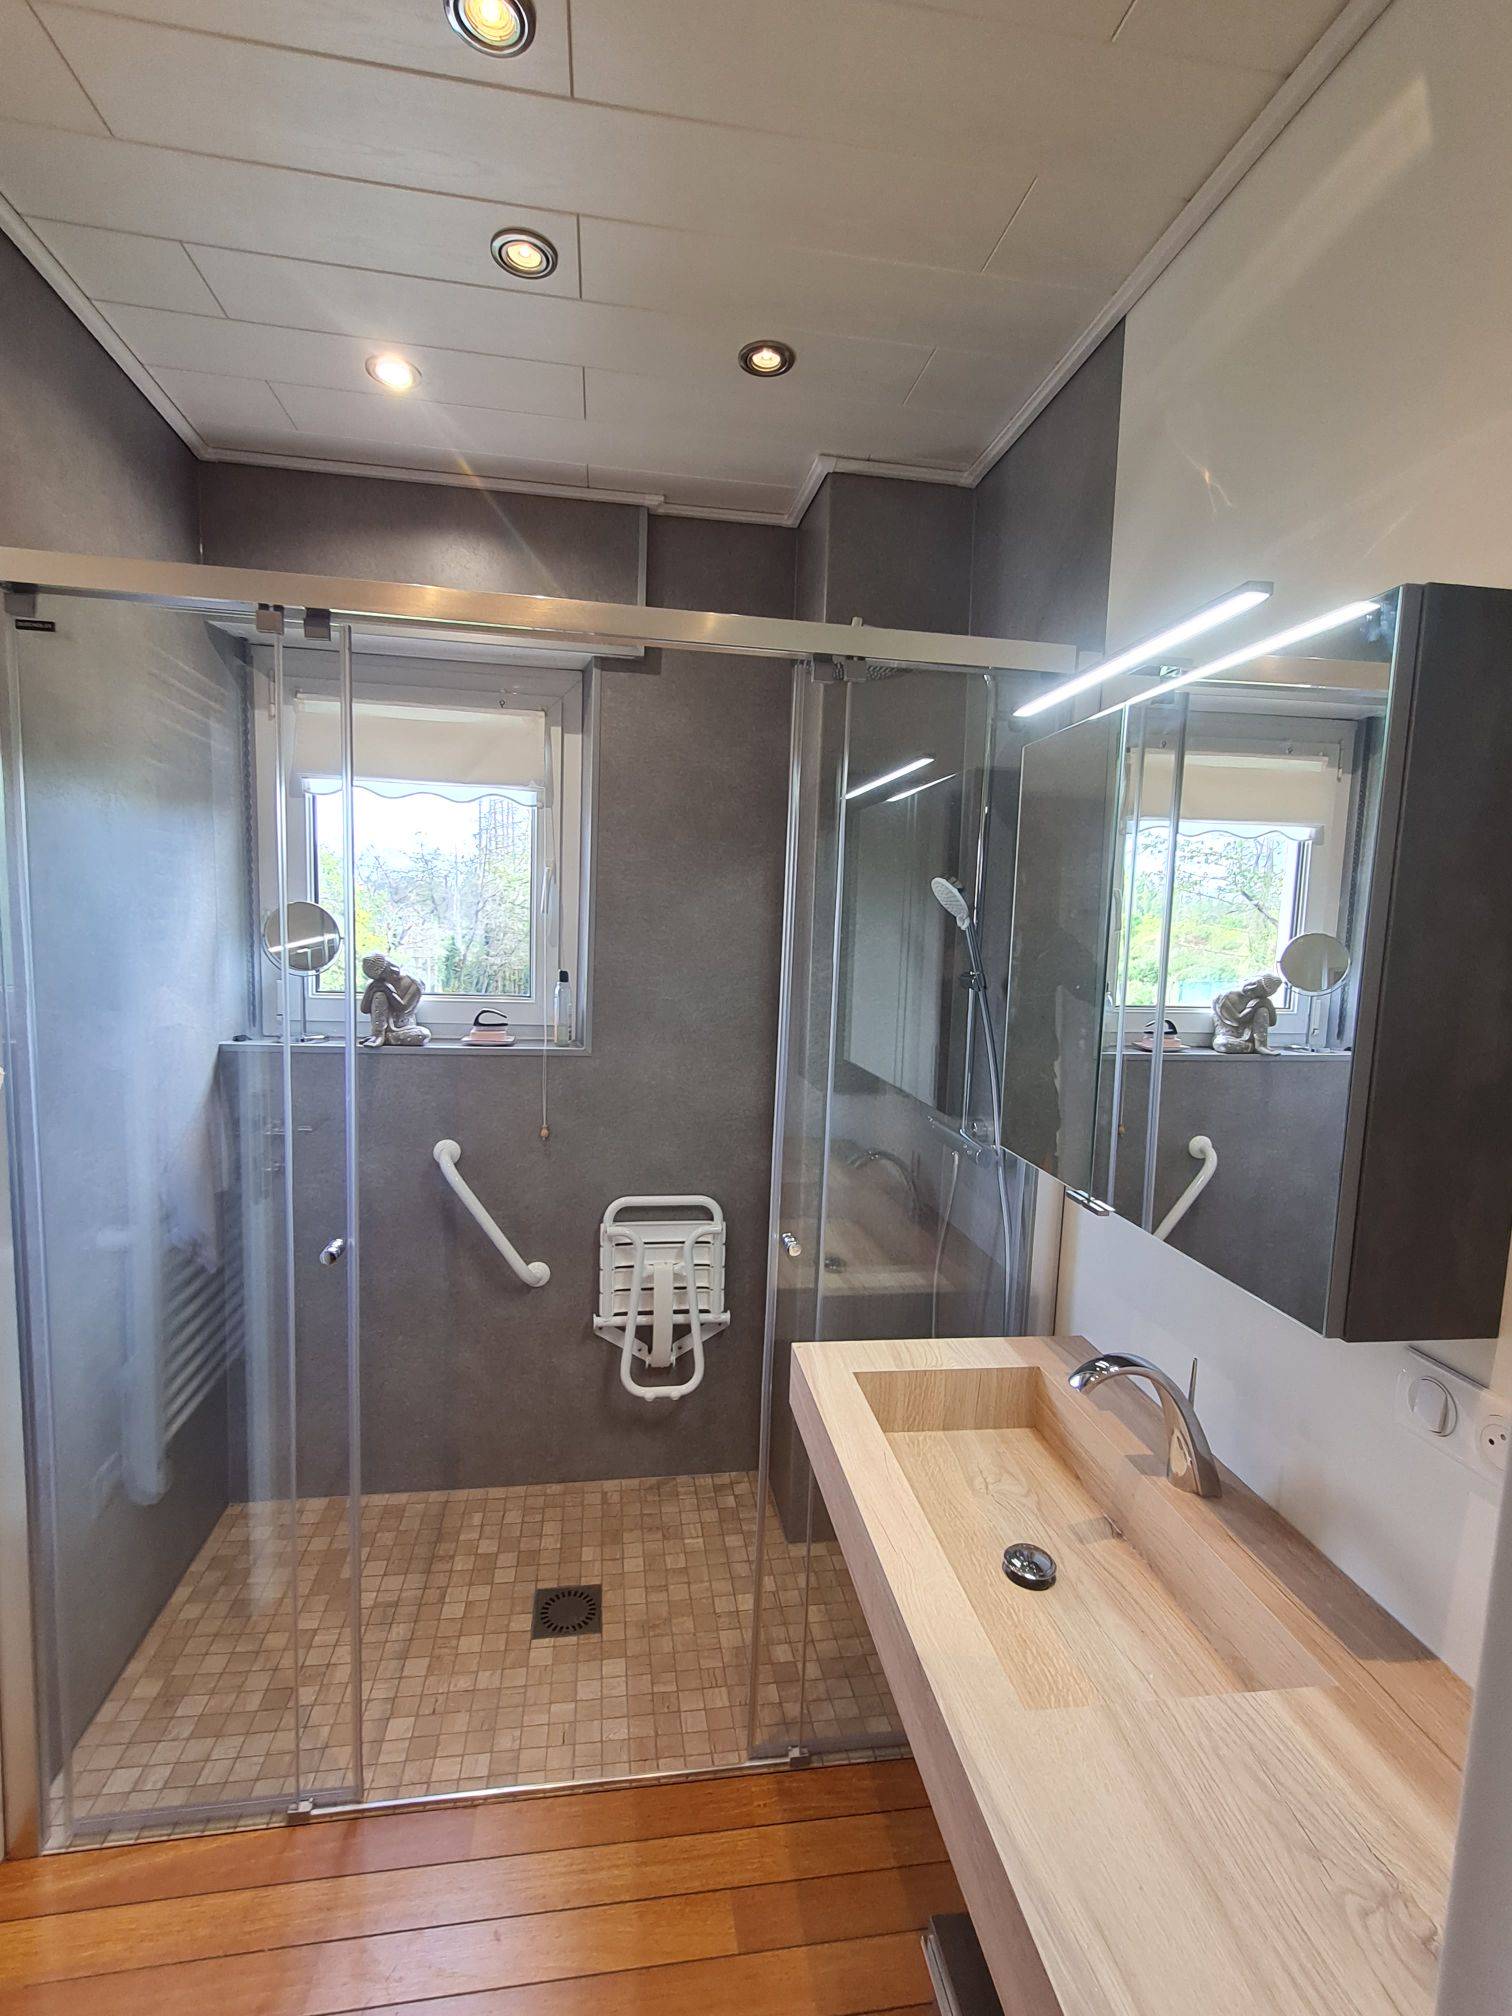 Comment bien choisir les sanitaires d’une salle de bain PMR ? Forbach